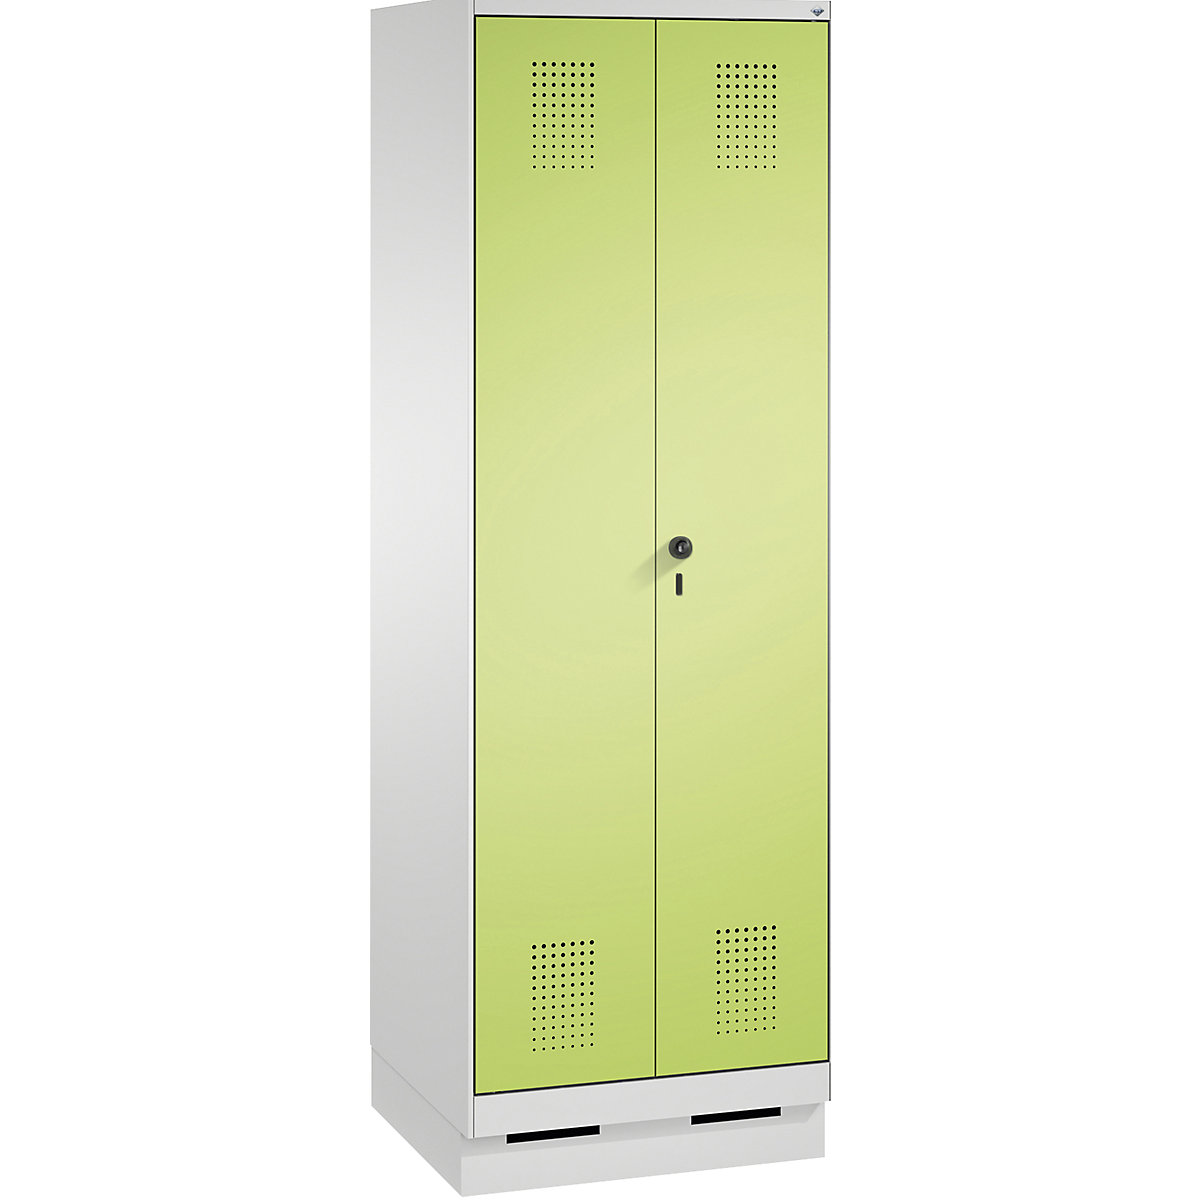 EVOLO takarítószer-/készüléktároló szekrény – C+P, rövidített válaszfal, 6 akasztó, rekeszek 2 x 300 mm, lábazattal, világosszürke / viridinzöld-12